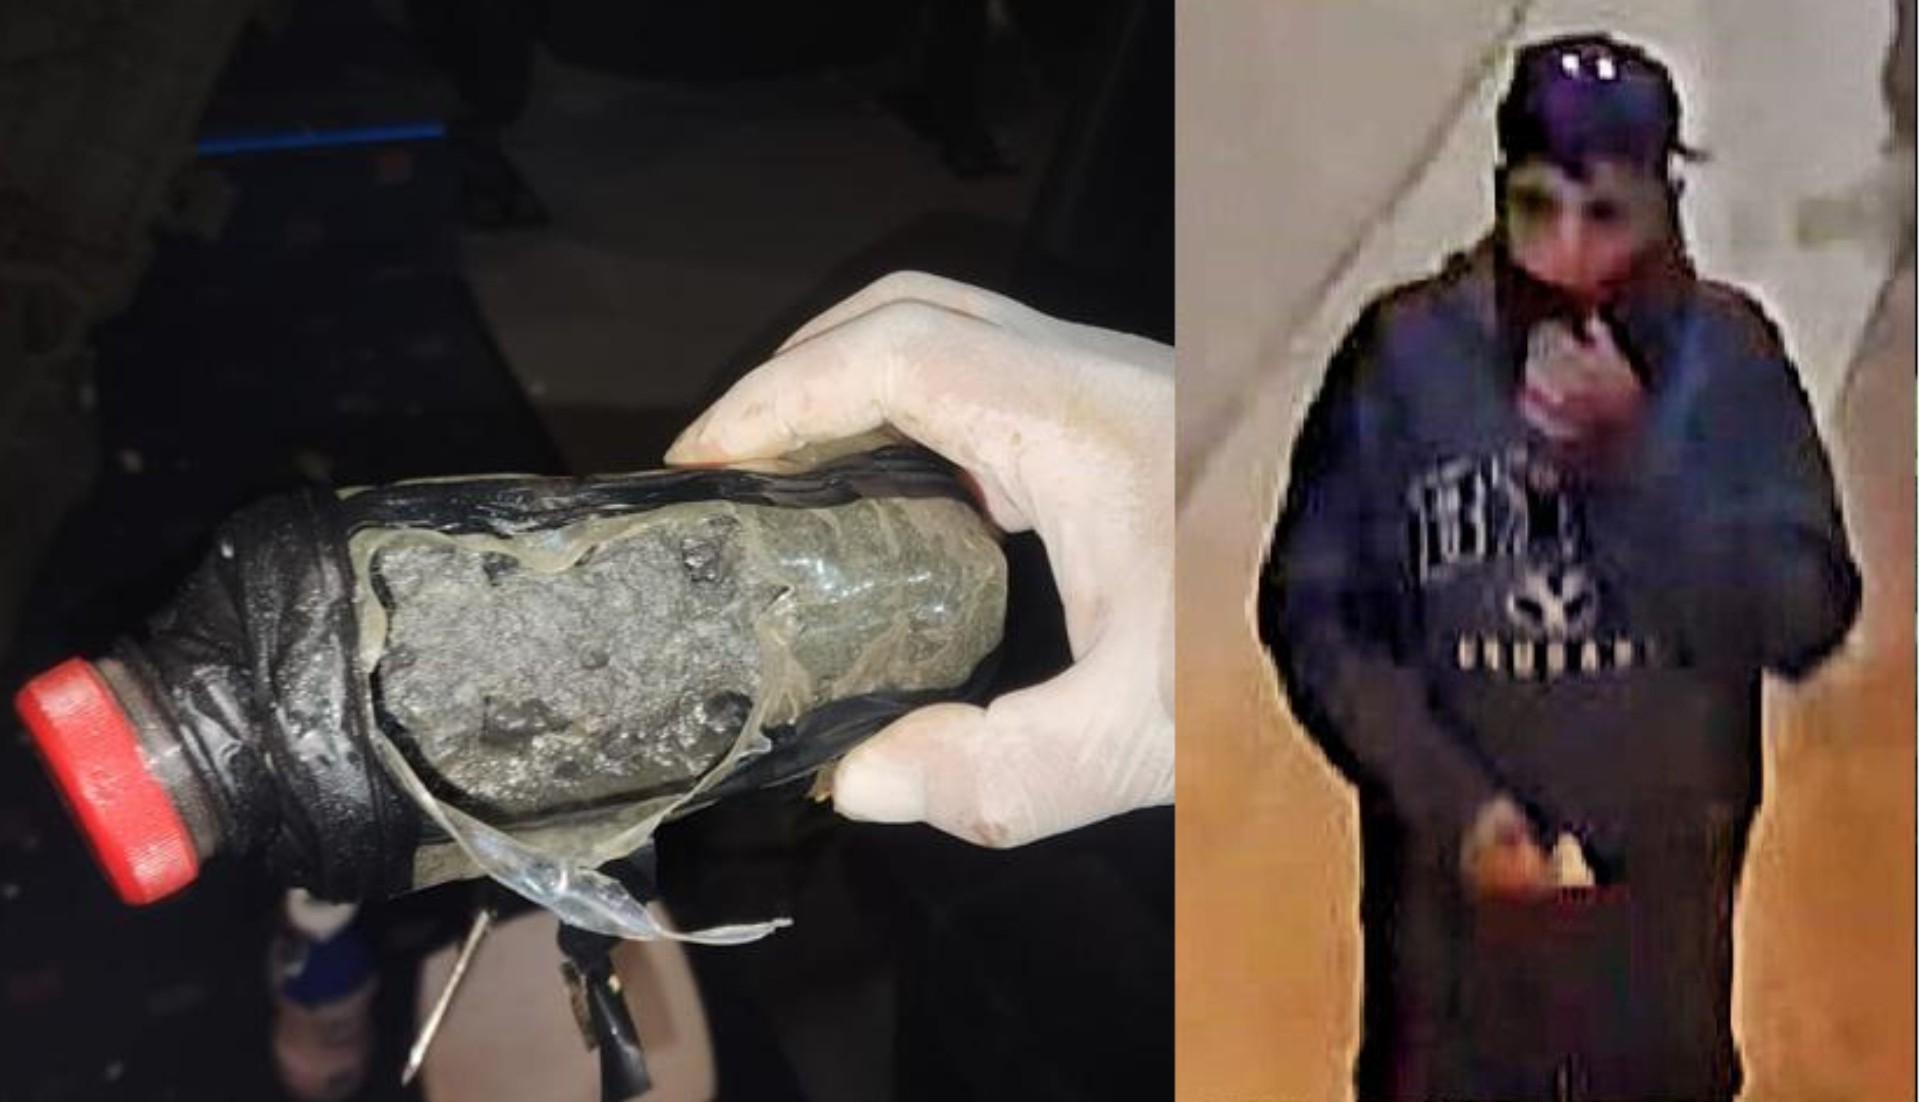 En el sitios fueron hallado tres artefactos explosivos 
(Foto: Fiscalía Chihuahua)